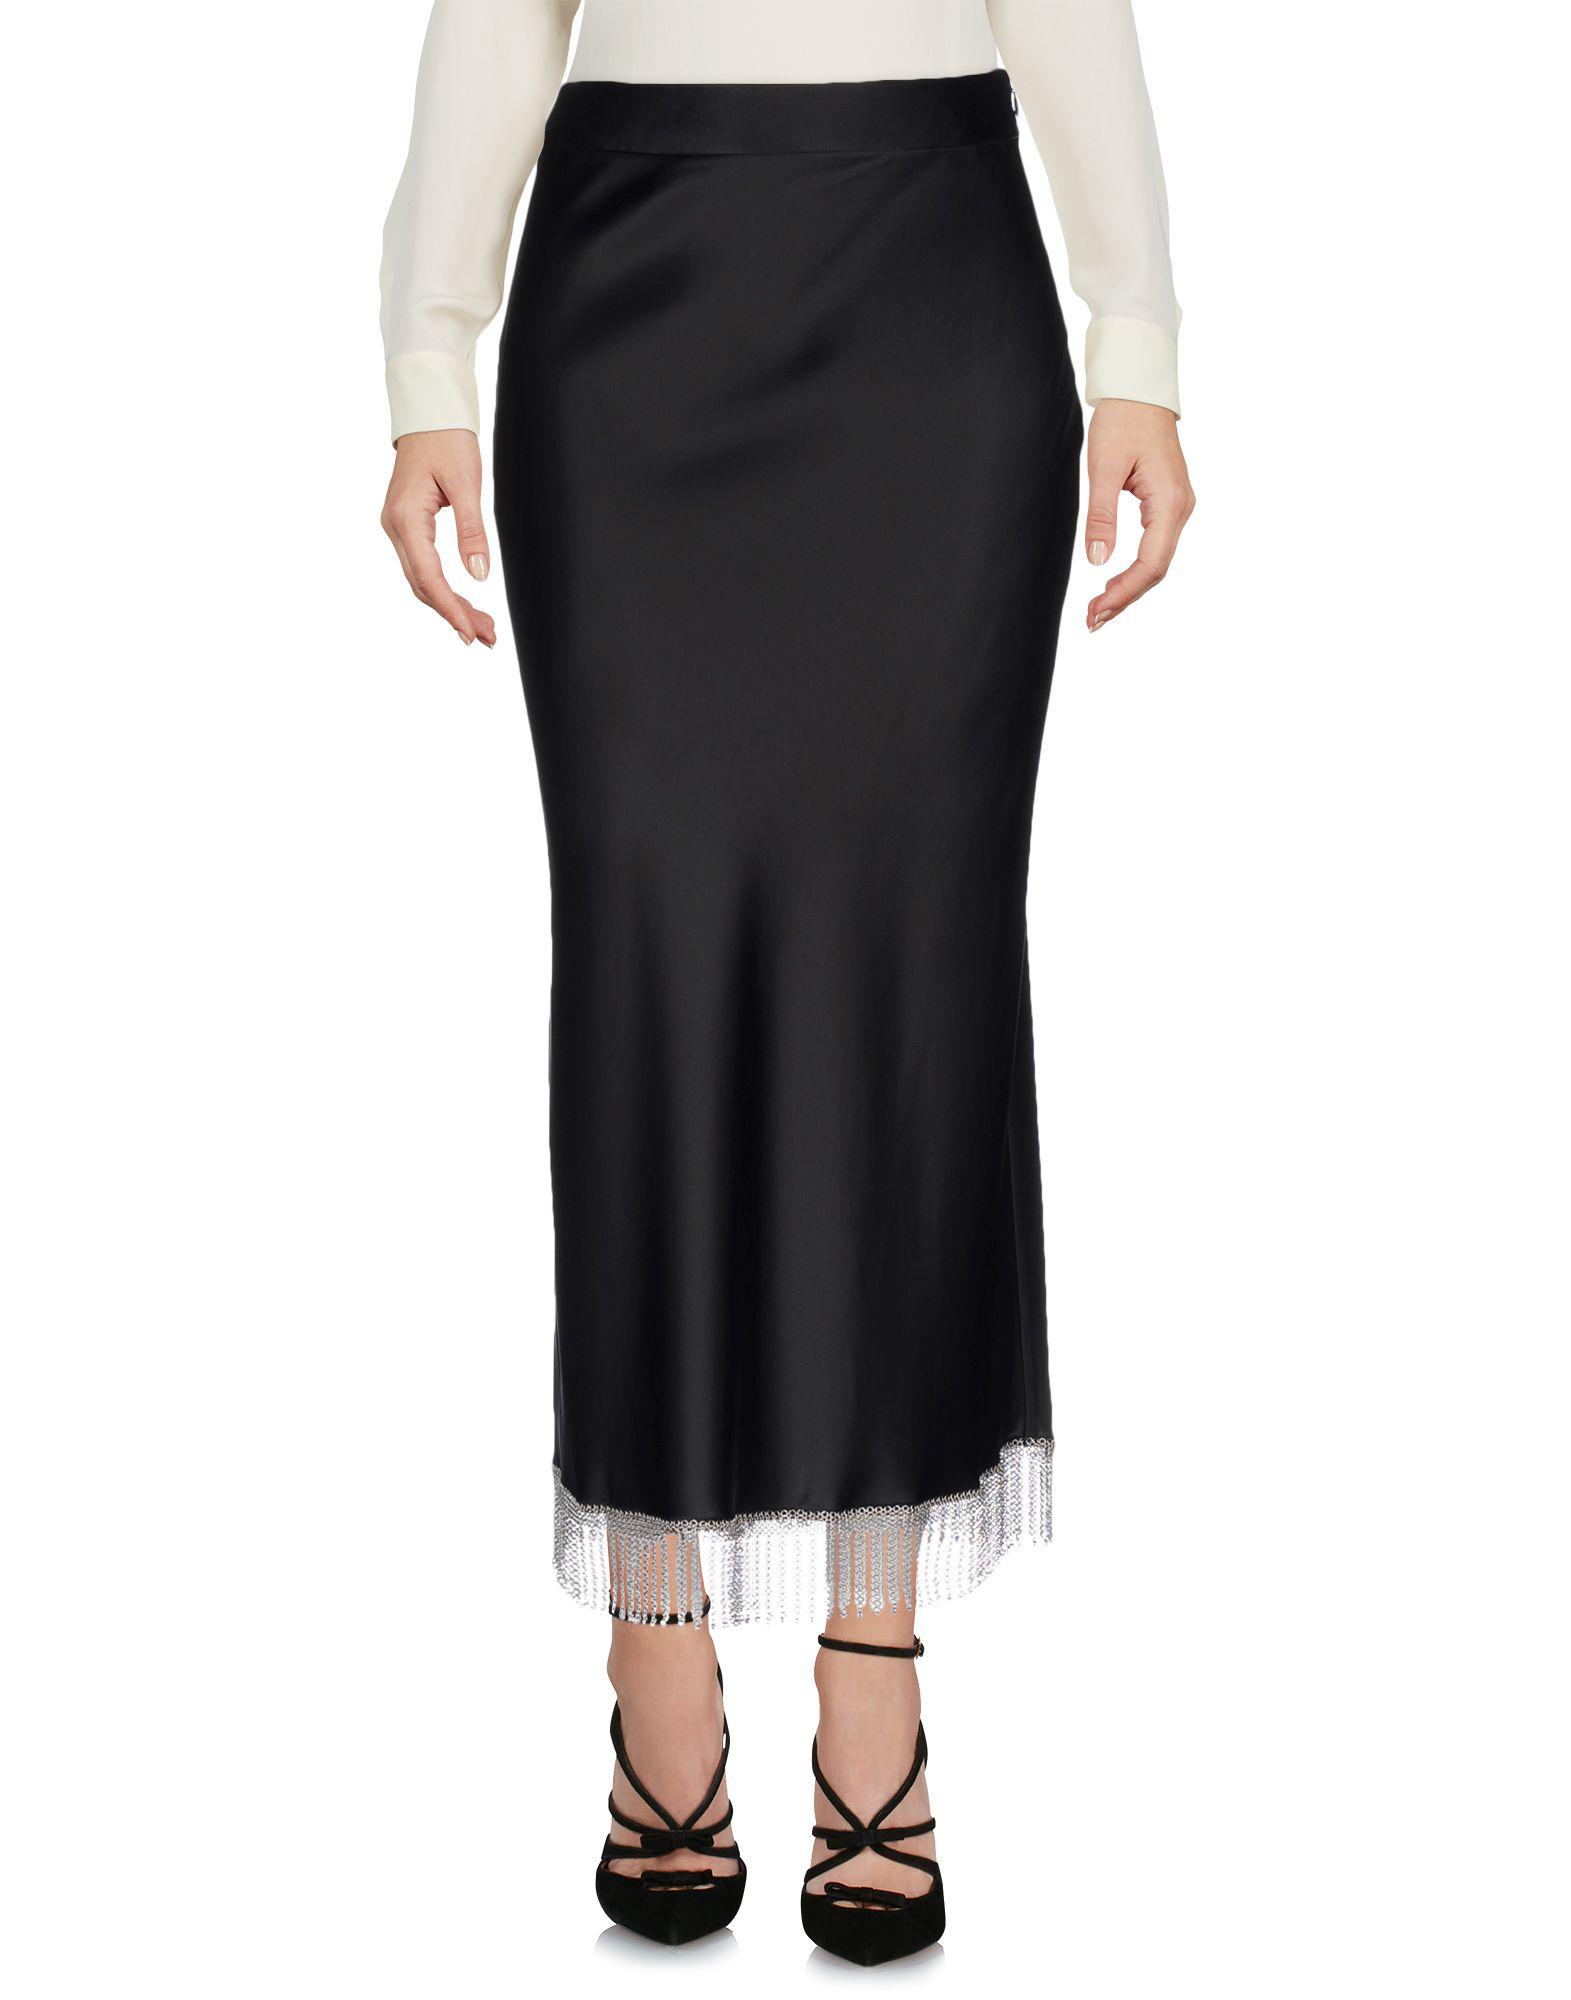 Alexander Wang Satin 3/4 Length Skirt in Black - Lyst